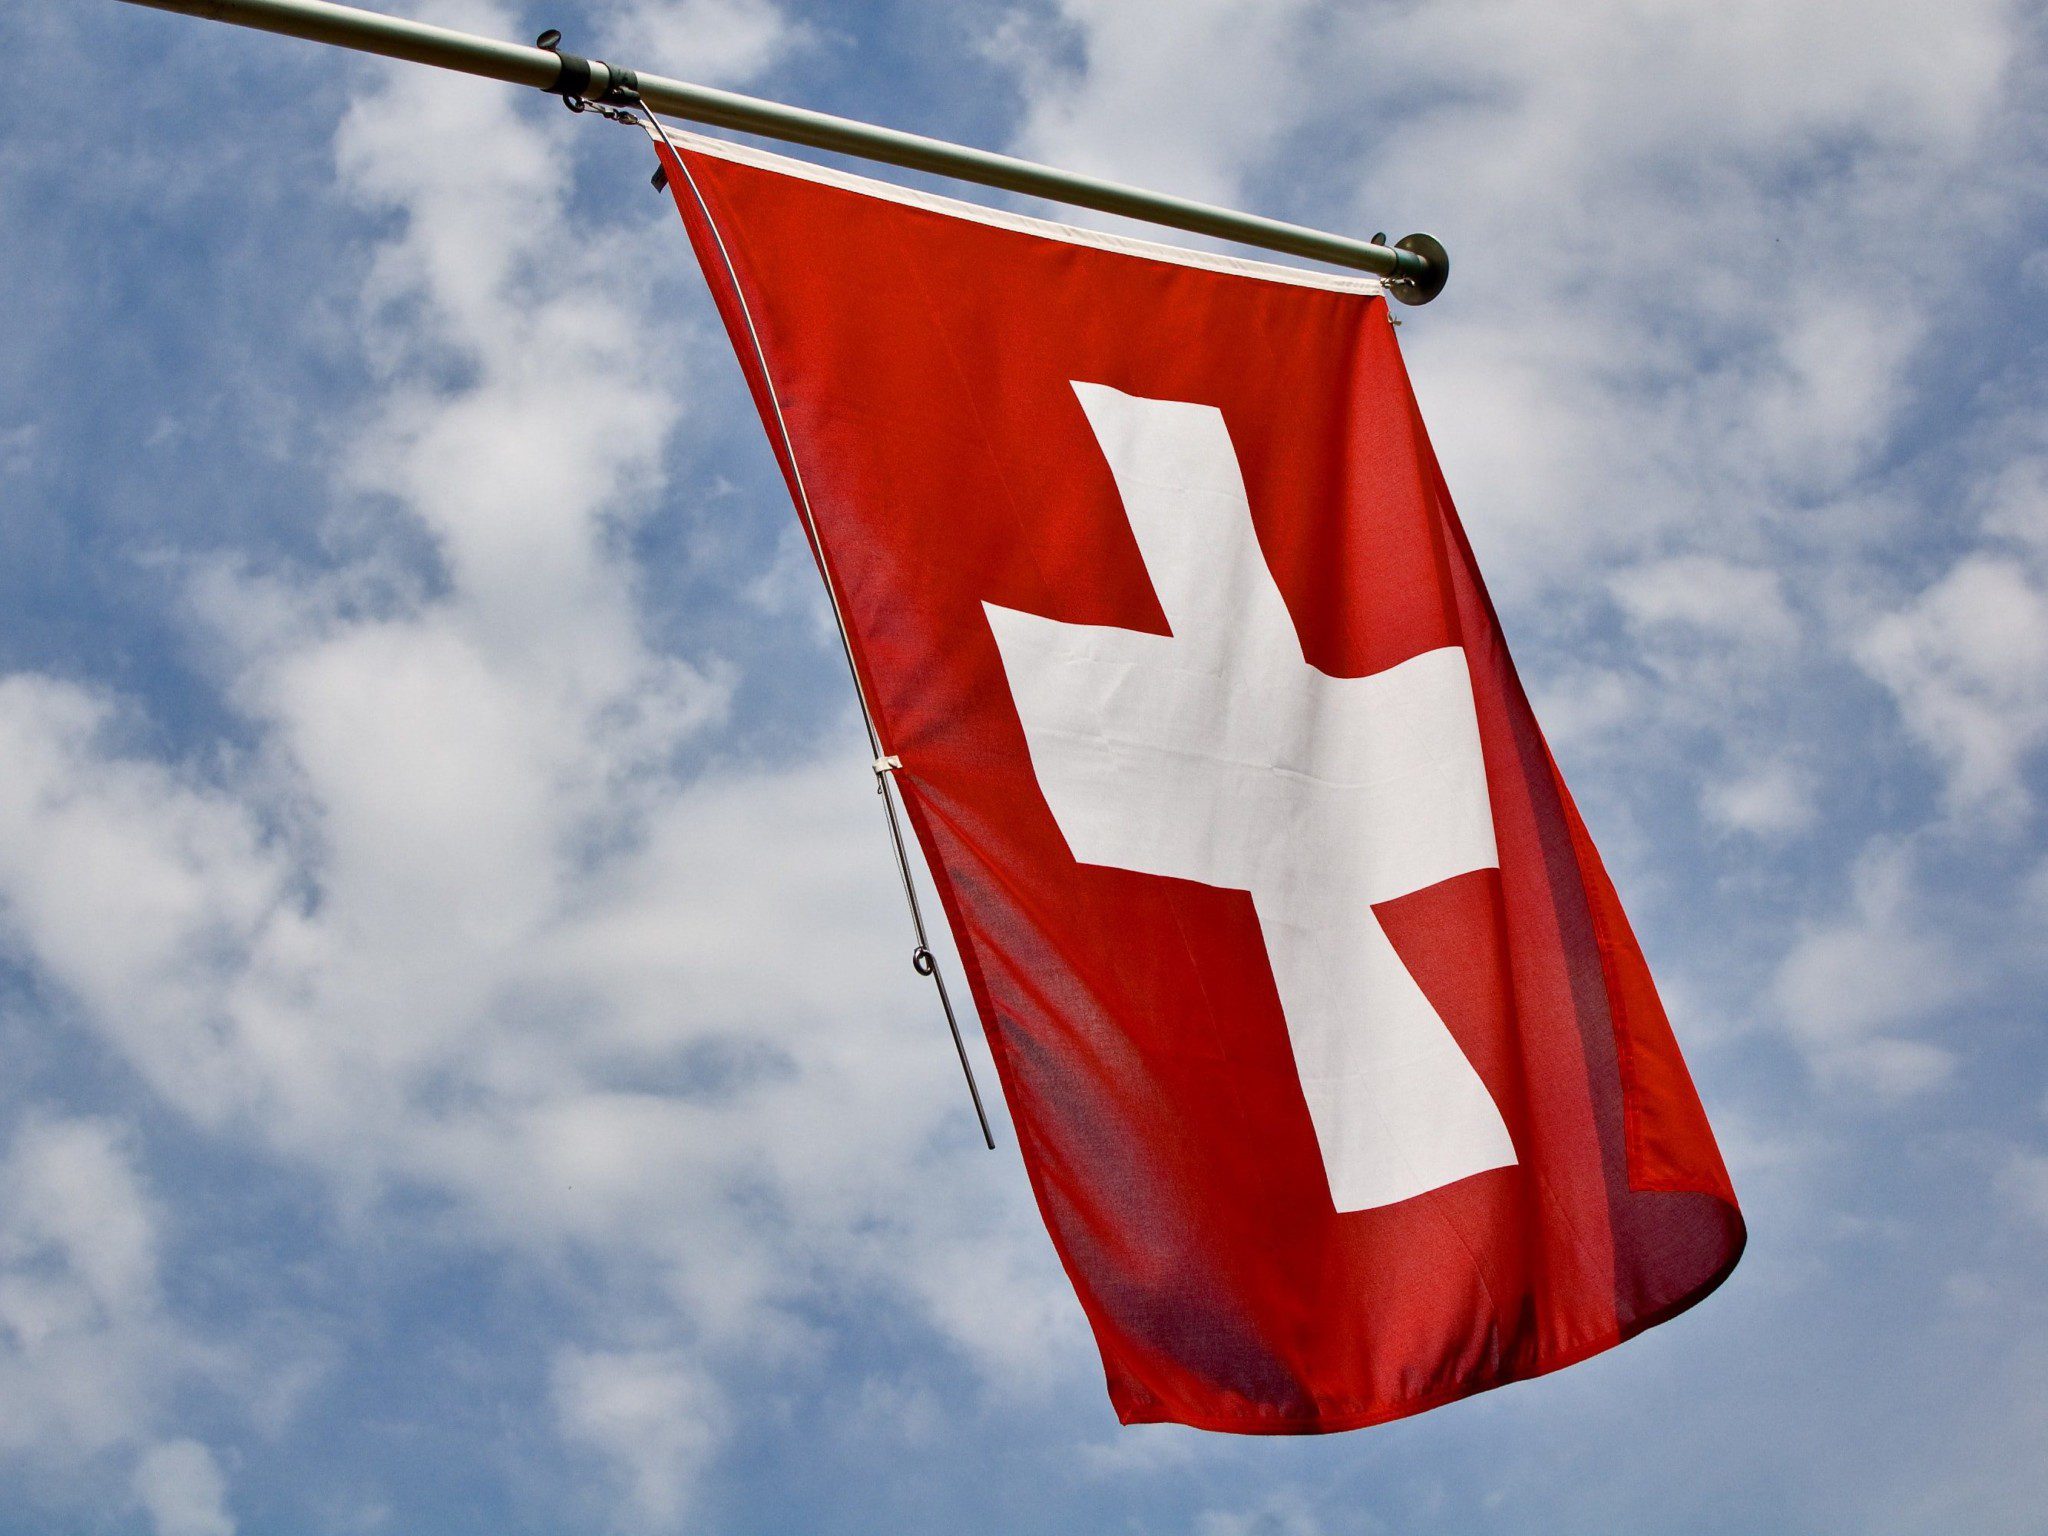 Elezioni in Svizzera: Risultati e implicazioni